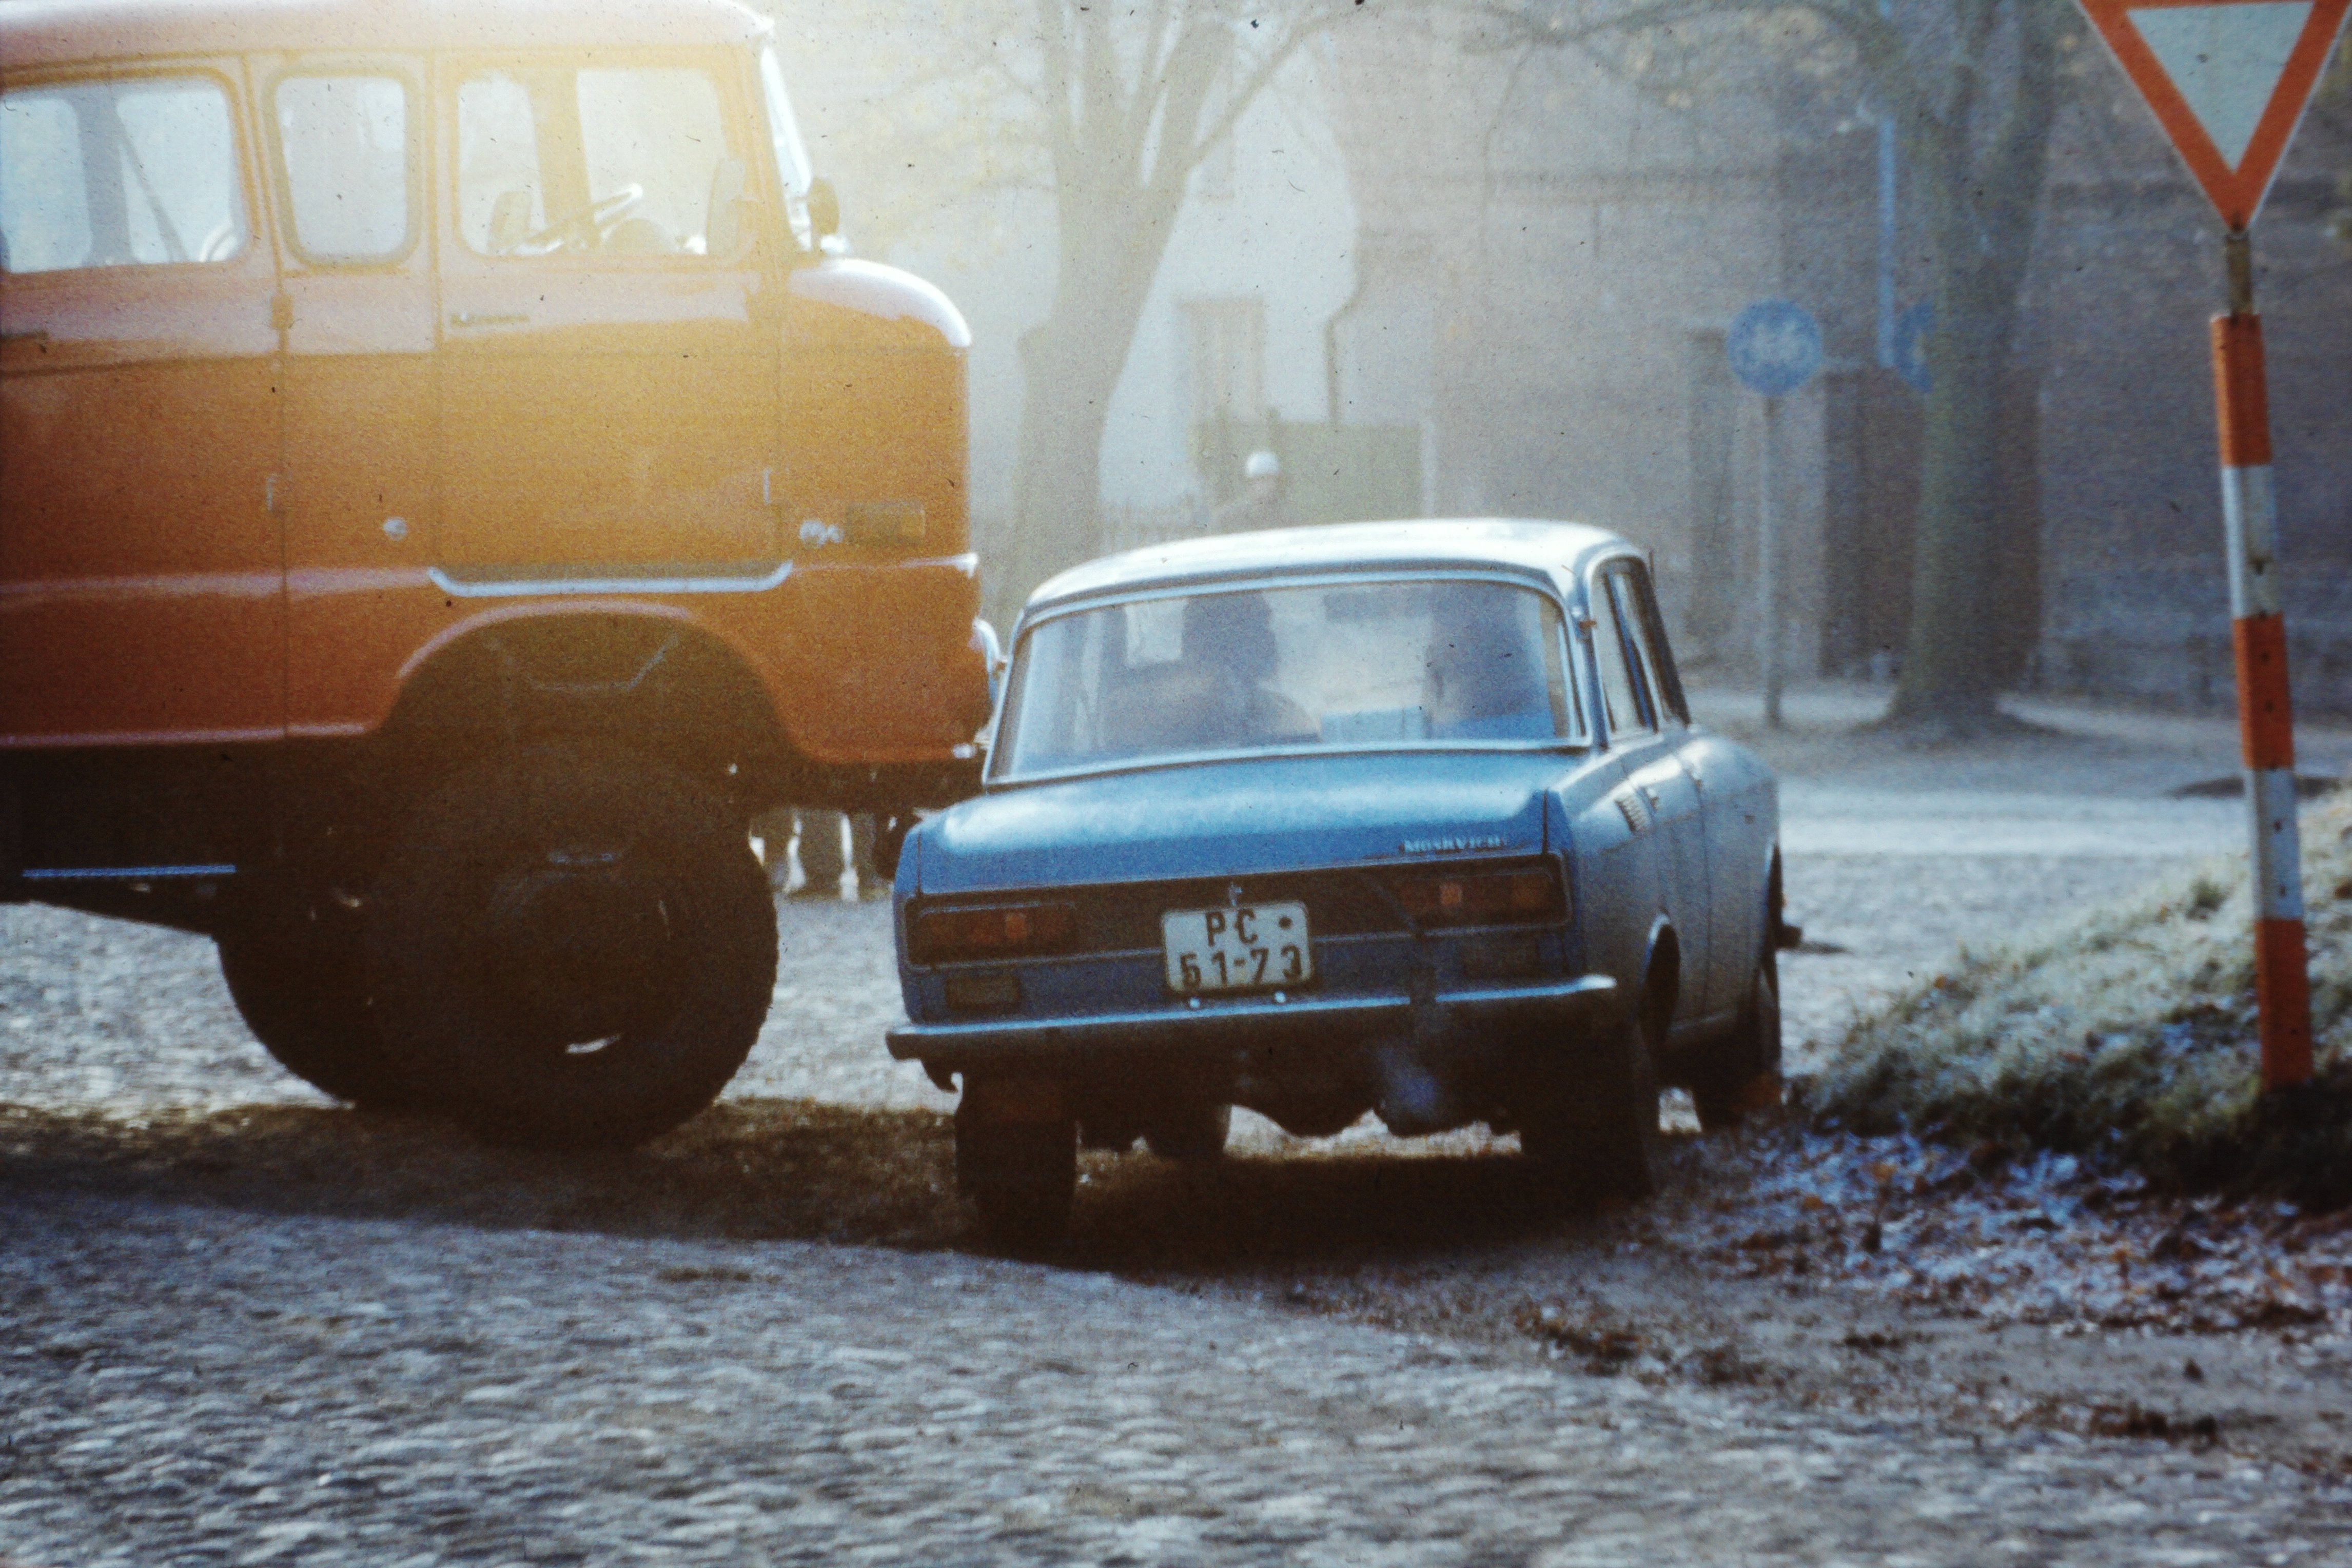 Atomschlagübung "Dosse 83": Straßenblockade mit Feuerwehrfahrzeug und Personenkraftwagen am Haus der Freimarks (DDR Geschichtsmuseum im Dokumentationszentrum Perleberg CC BY-SA)